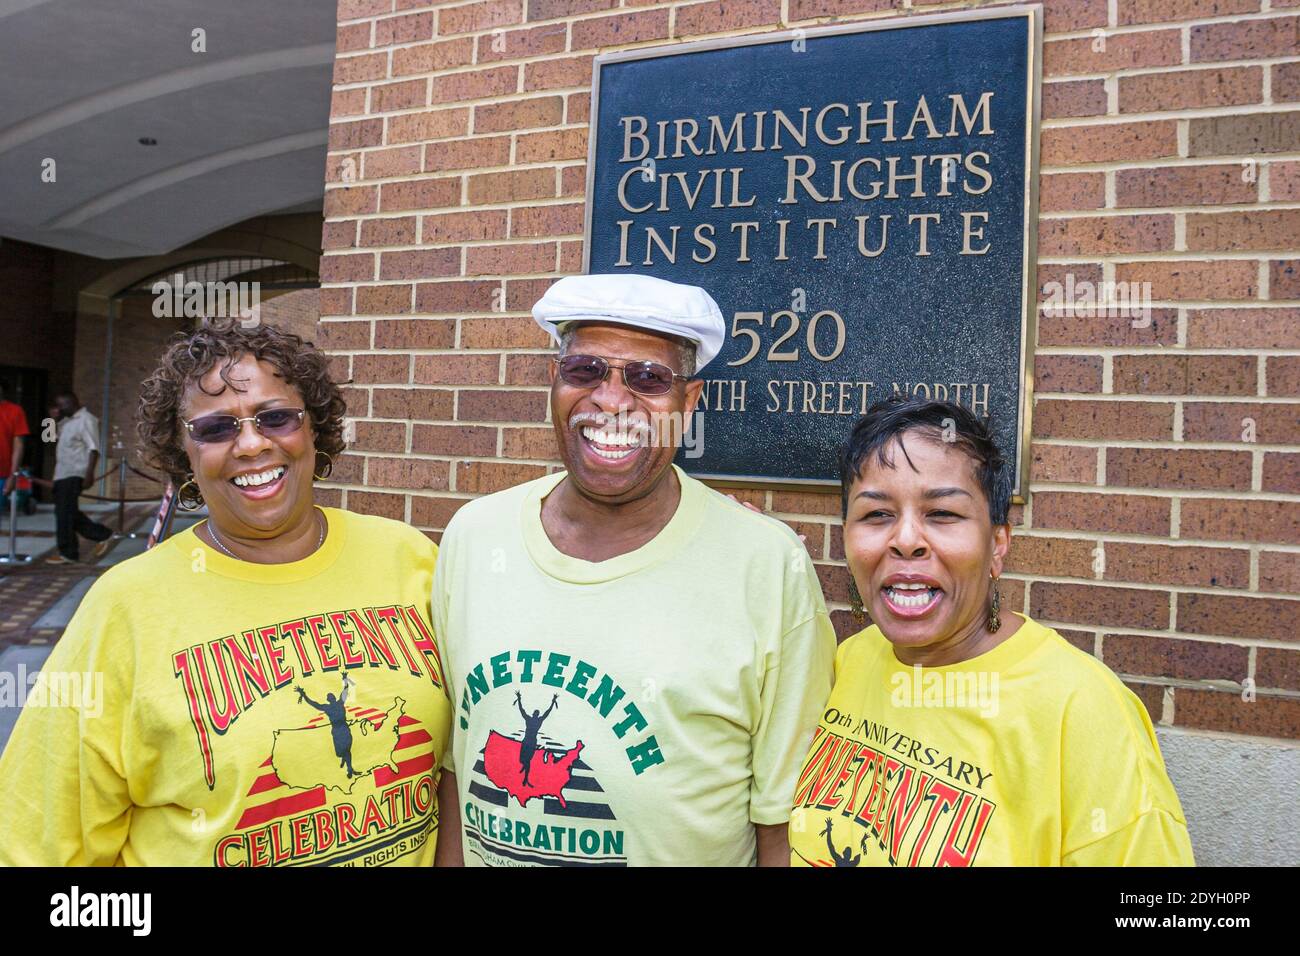 Birmingham Alabama, Civil Rights Institute außerhalb der Außenfassade, Juneteenth-Fest Emancipation Day Schwarzer Mann Frau weibliches Paar Freunde lächelnd, Stockfoto